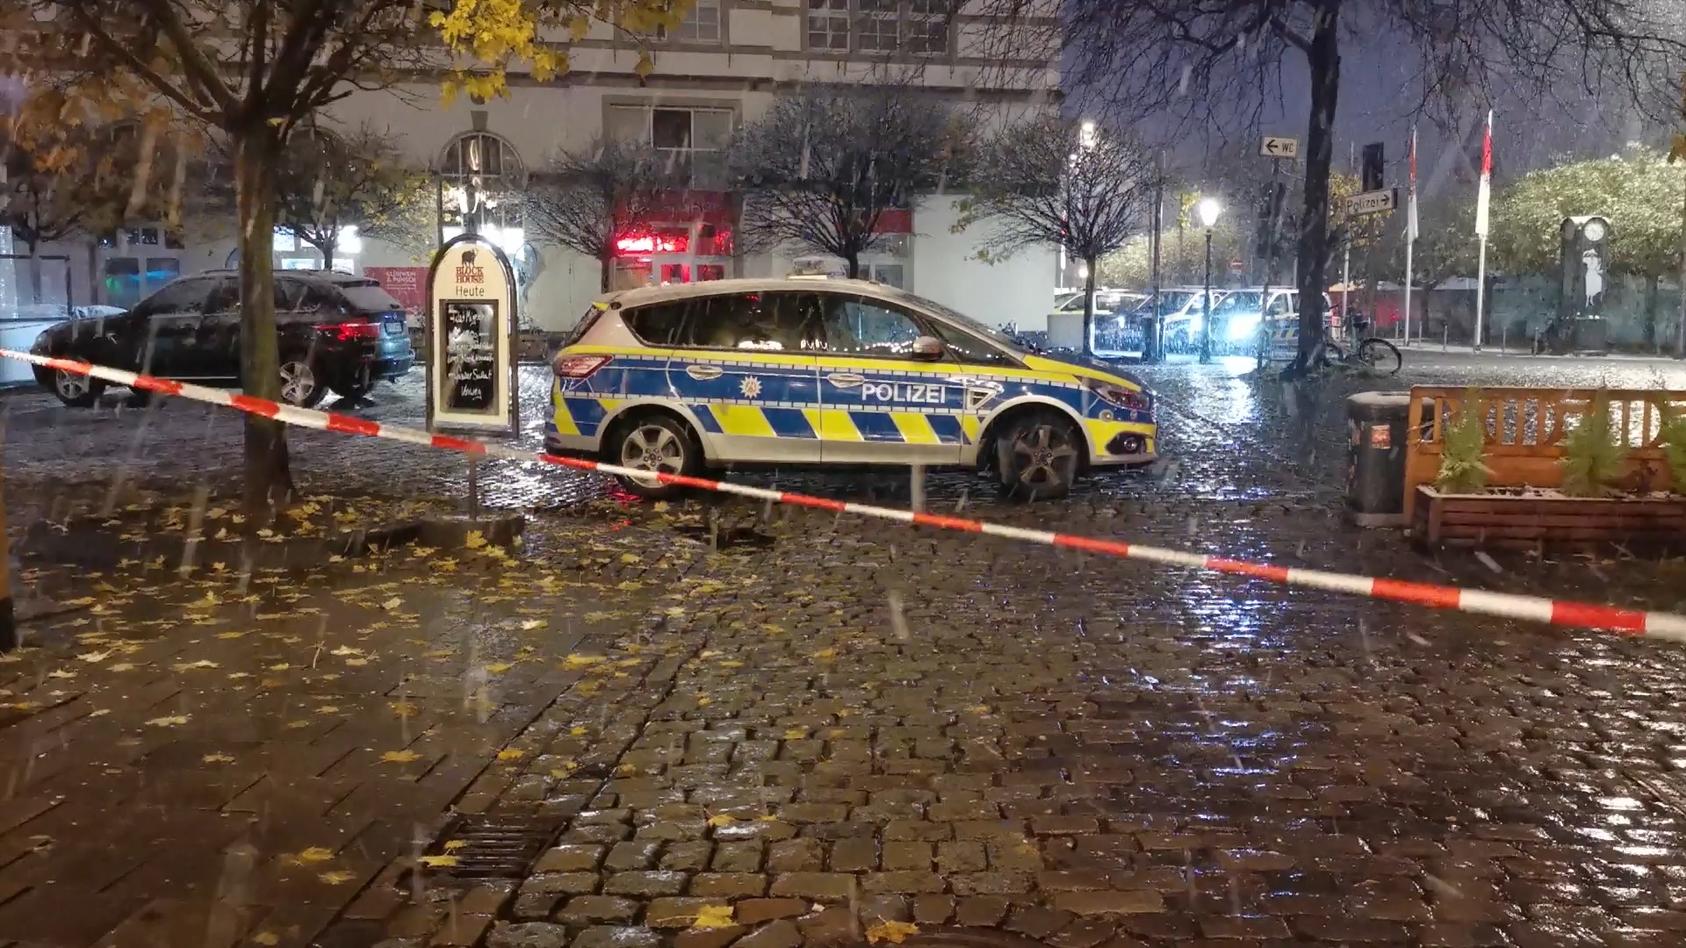 Polizei gibt Düsseldorfer Weihnachtsmärkte wieder frei Nach Räumung